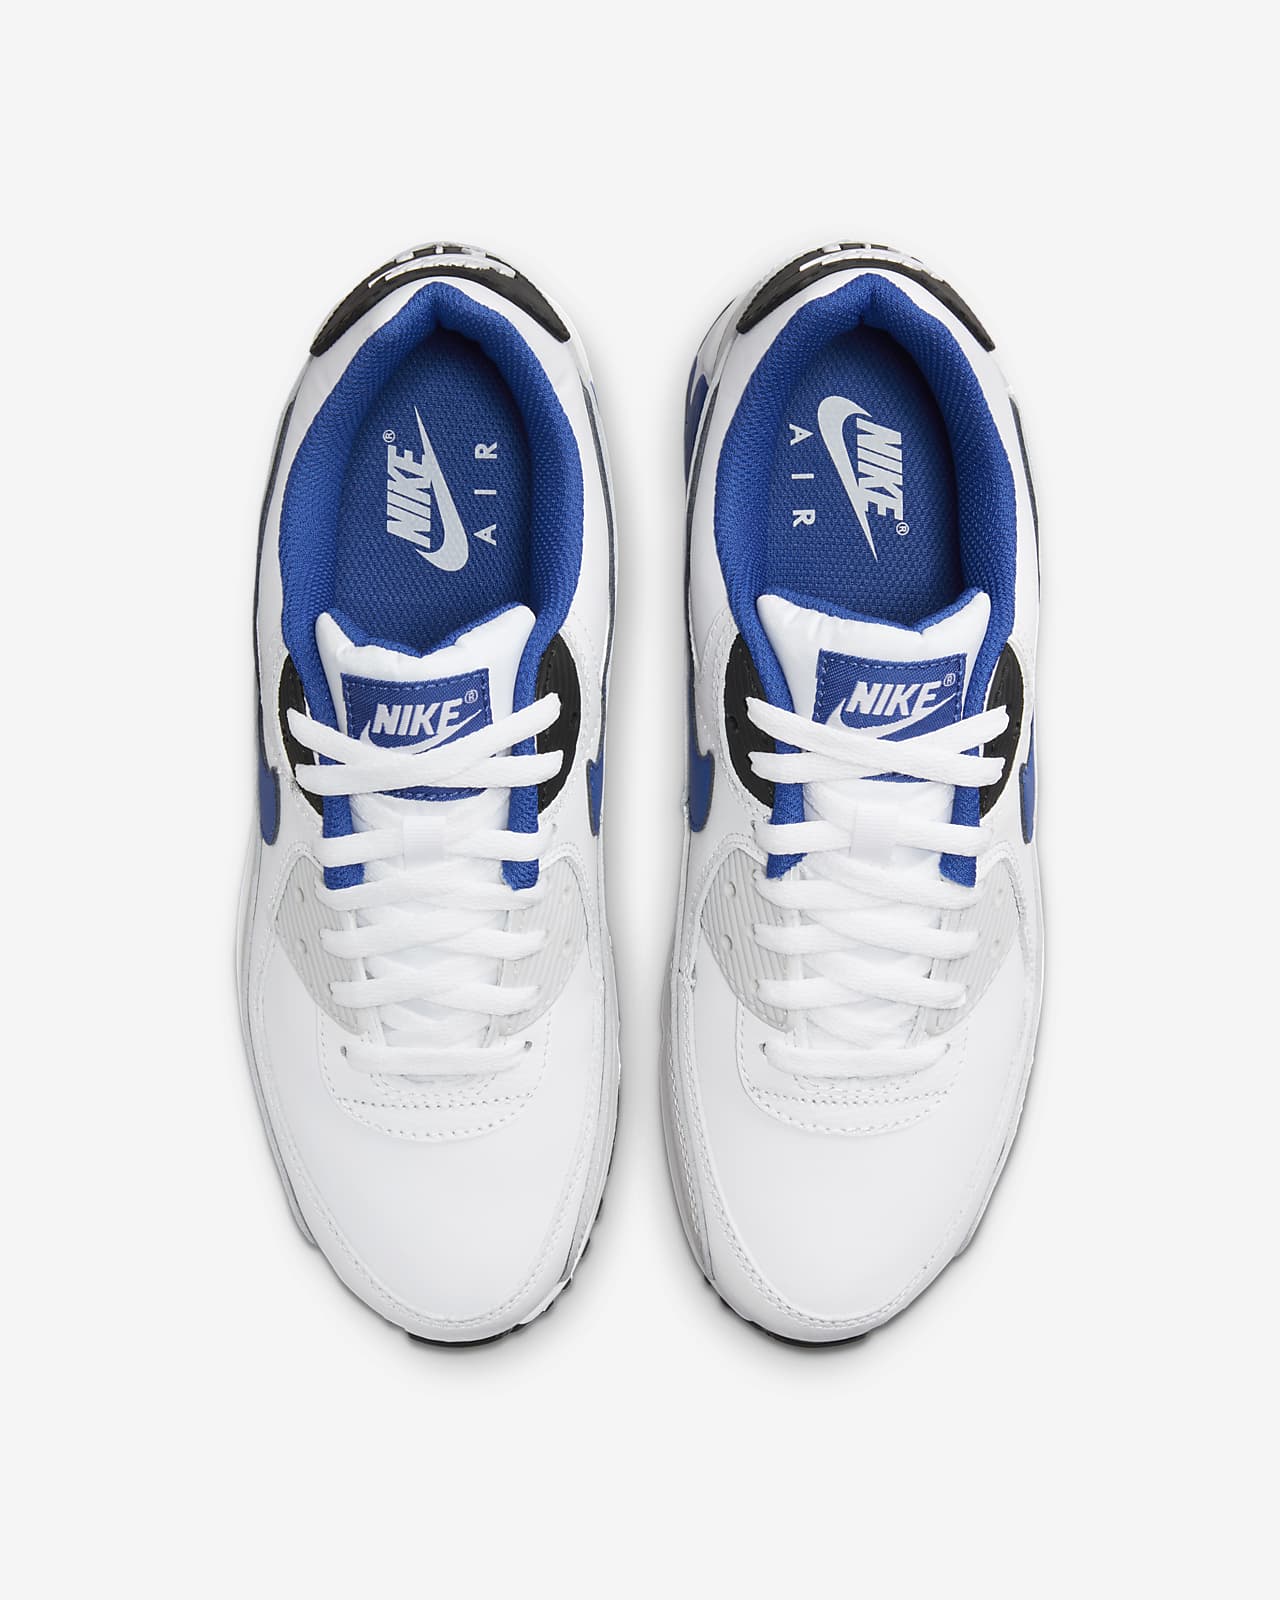 Nike Air Max 90 Shoes